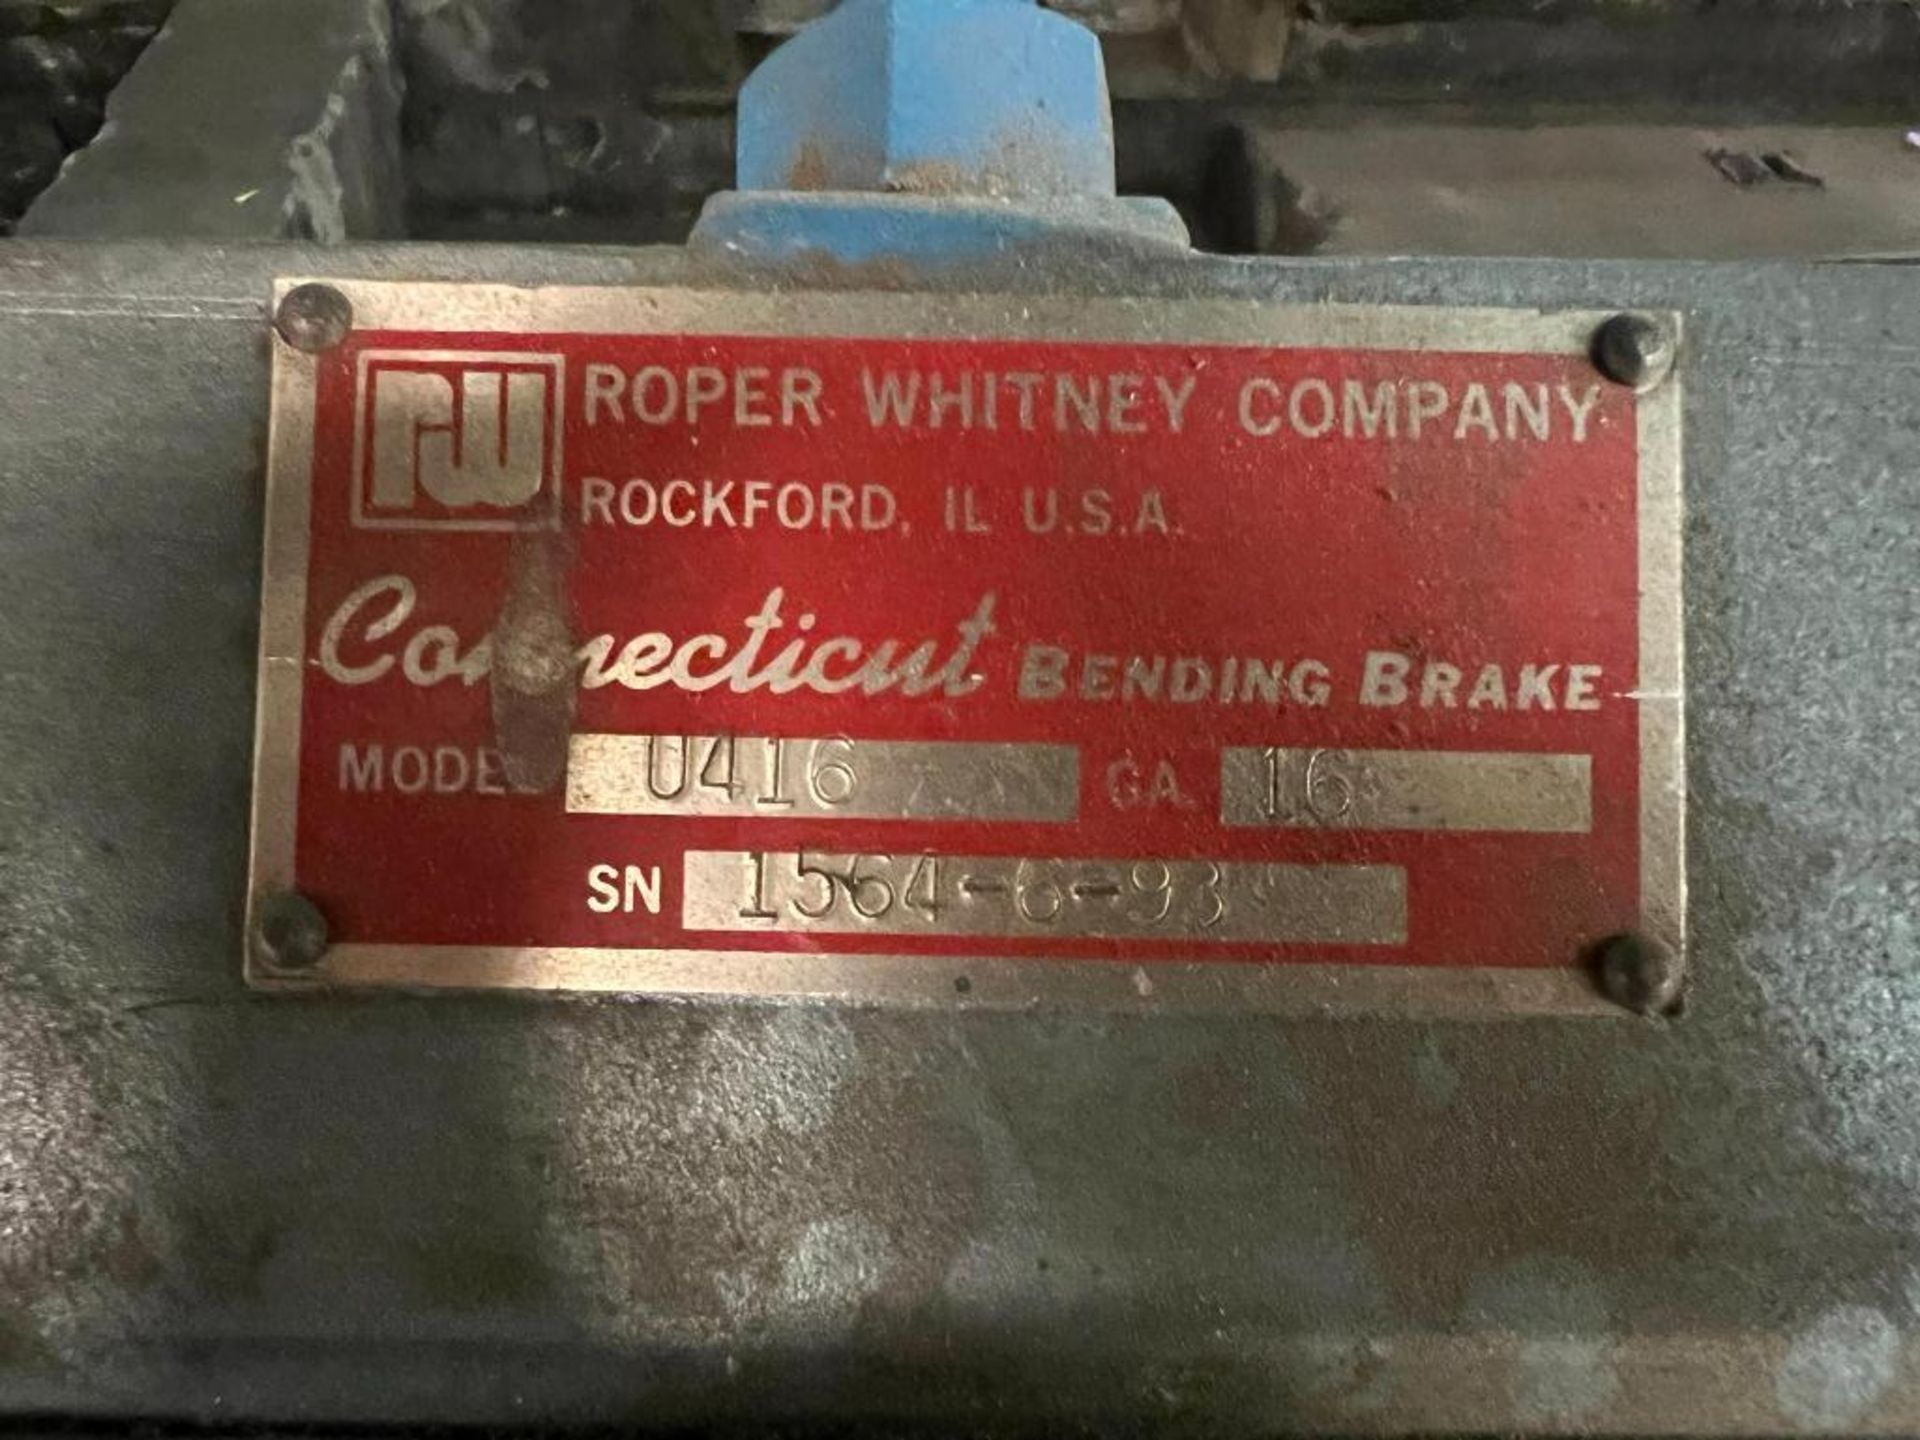 Roper Whitney Conneticut Bending Brake Model U416, S/N 1516-5-93, 16 GA Capacity - Image 3 of 4